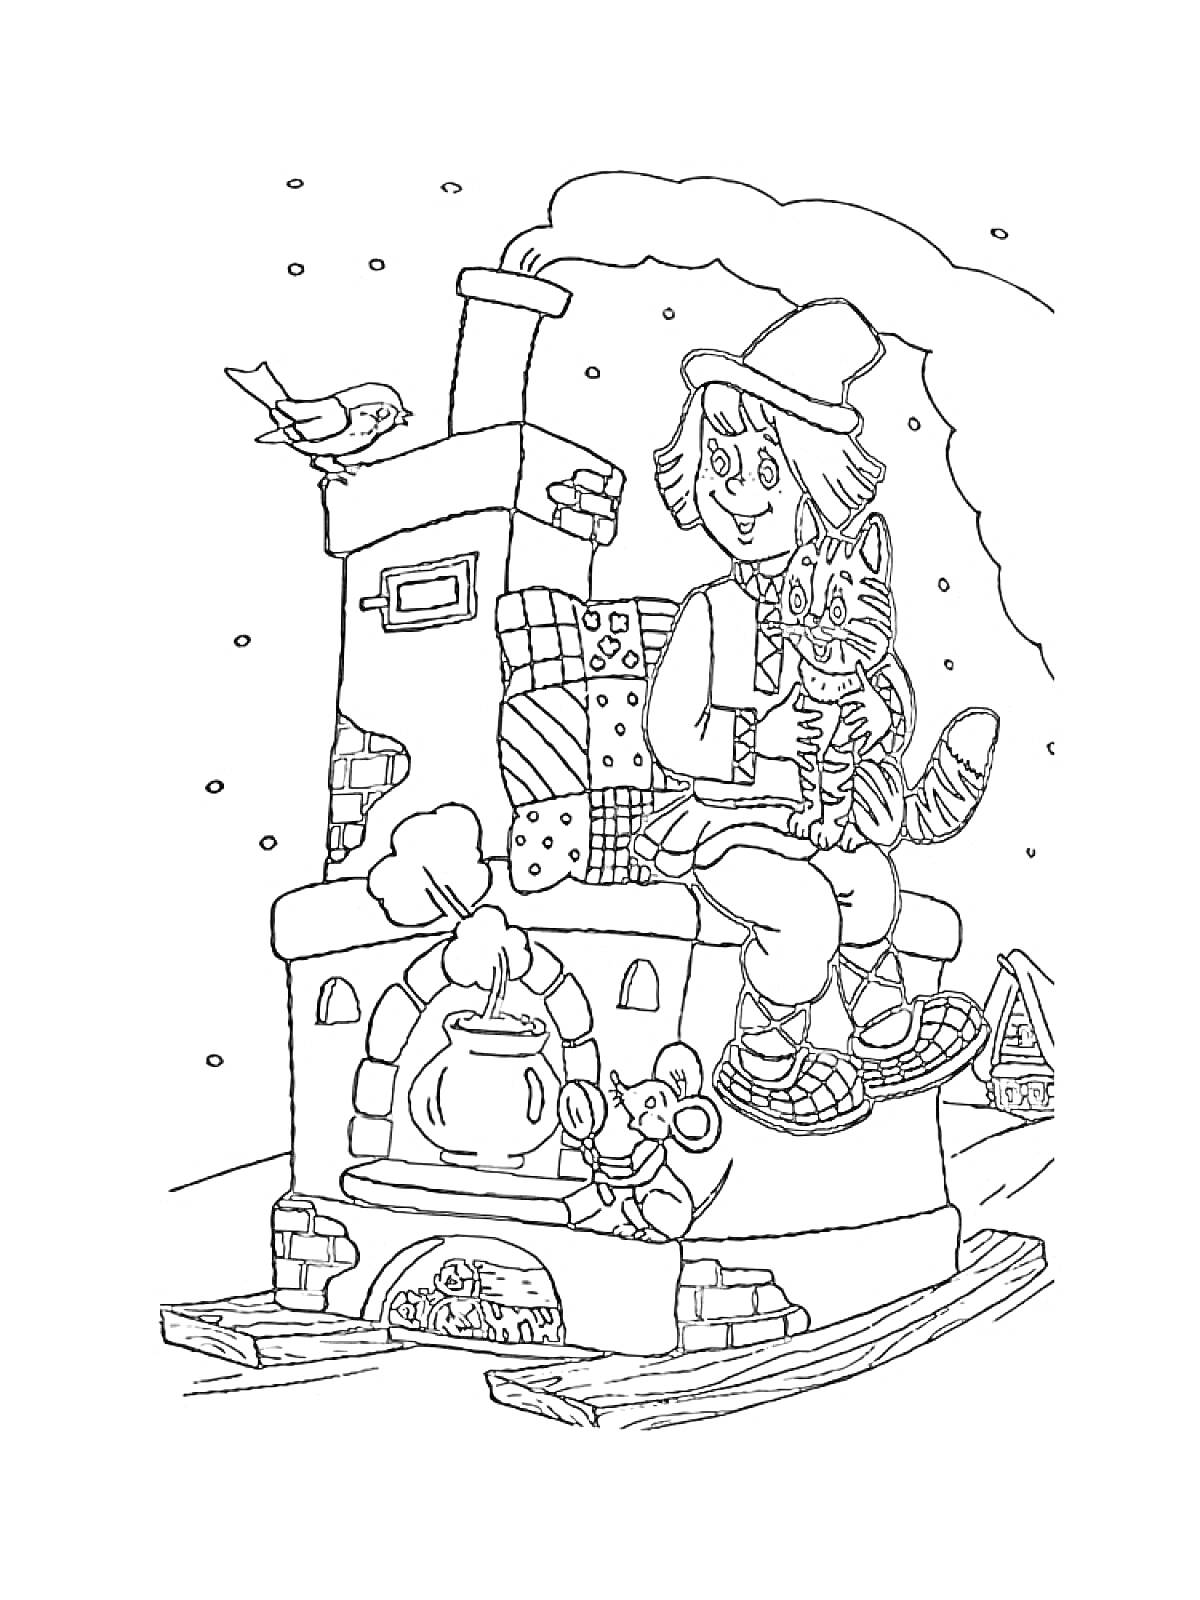 Раскраска Русская печь с трубой, мальчик с котом, мышонок, чайник на печи, птица на крыше